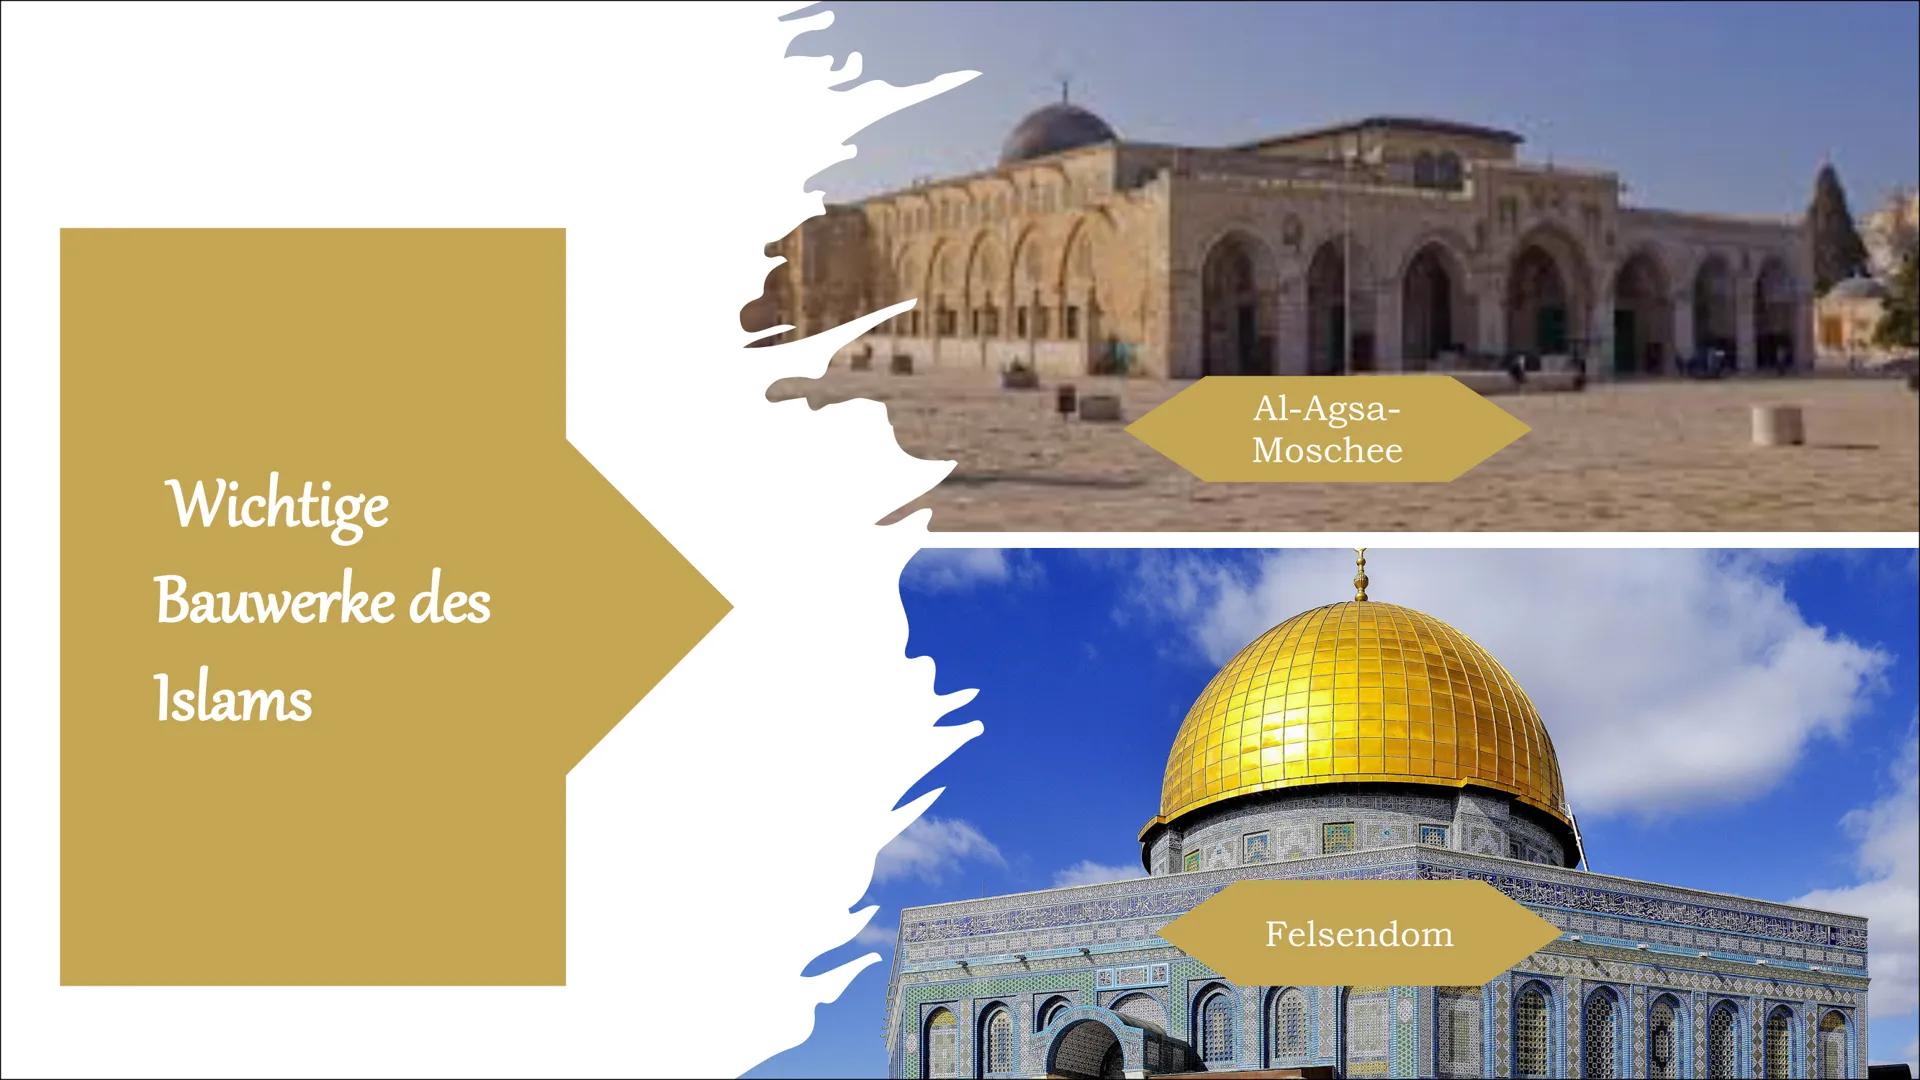 Bedeutung
Jerusalems
Eine PowerPoint Präsentation Inhaltsangabe
●
●
●
●
Allgemeine Infos
Zeitstrahl Jerusalem
Stadt der drei Weltreligionen
